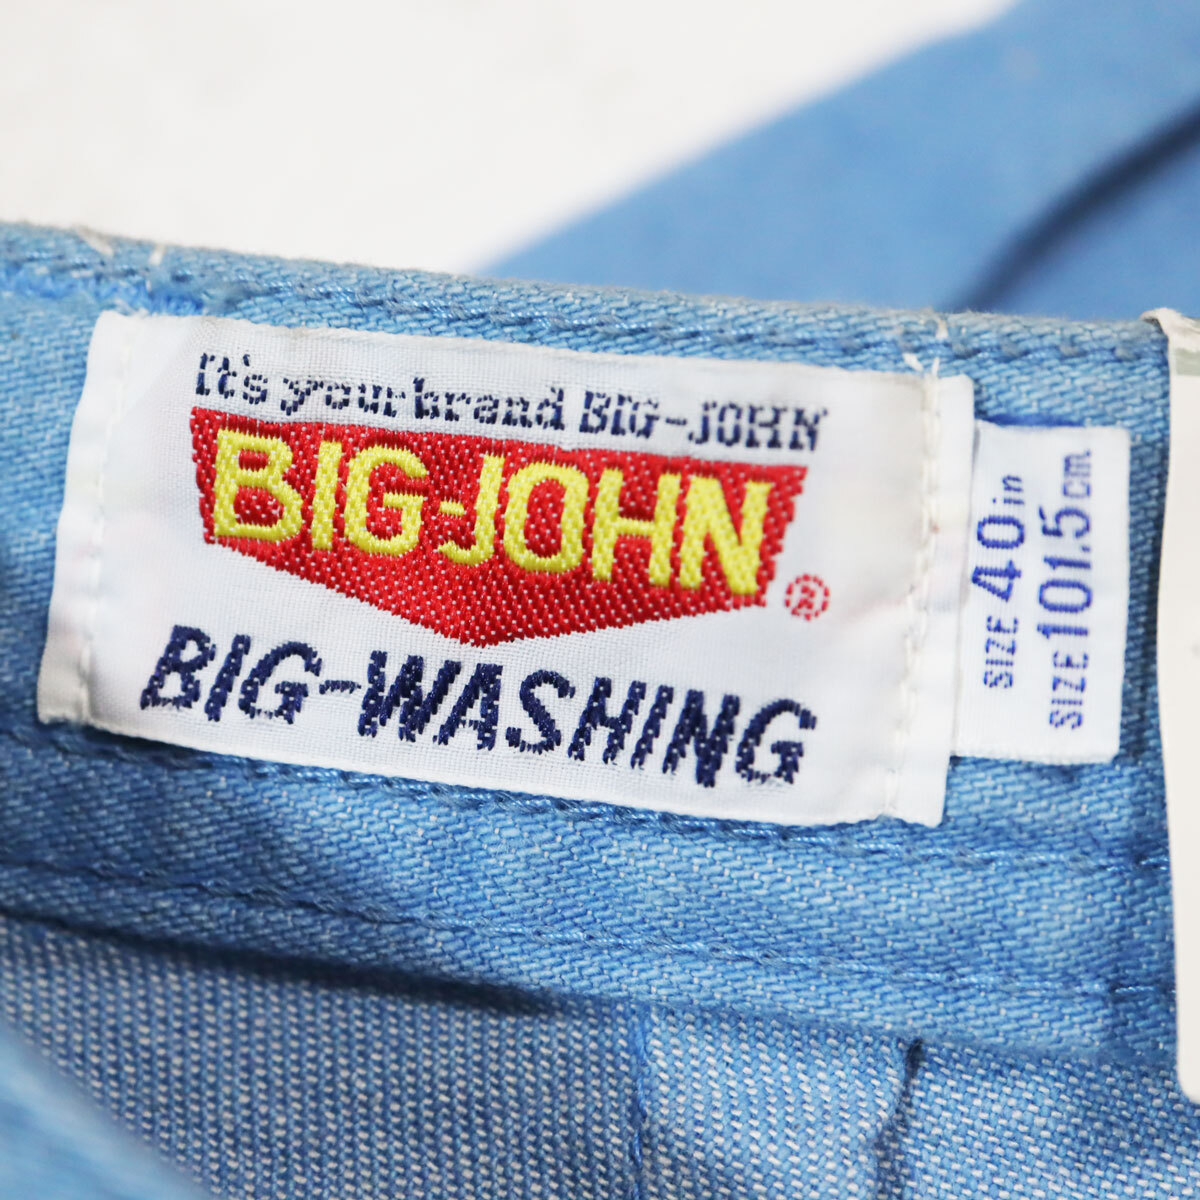 r328 40inch талия 101 распорка Denim рост рост стрейч голубой Big John BIG JOHN Showa Retro 60 годы 70 годы 